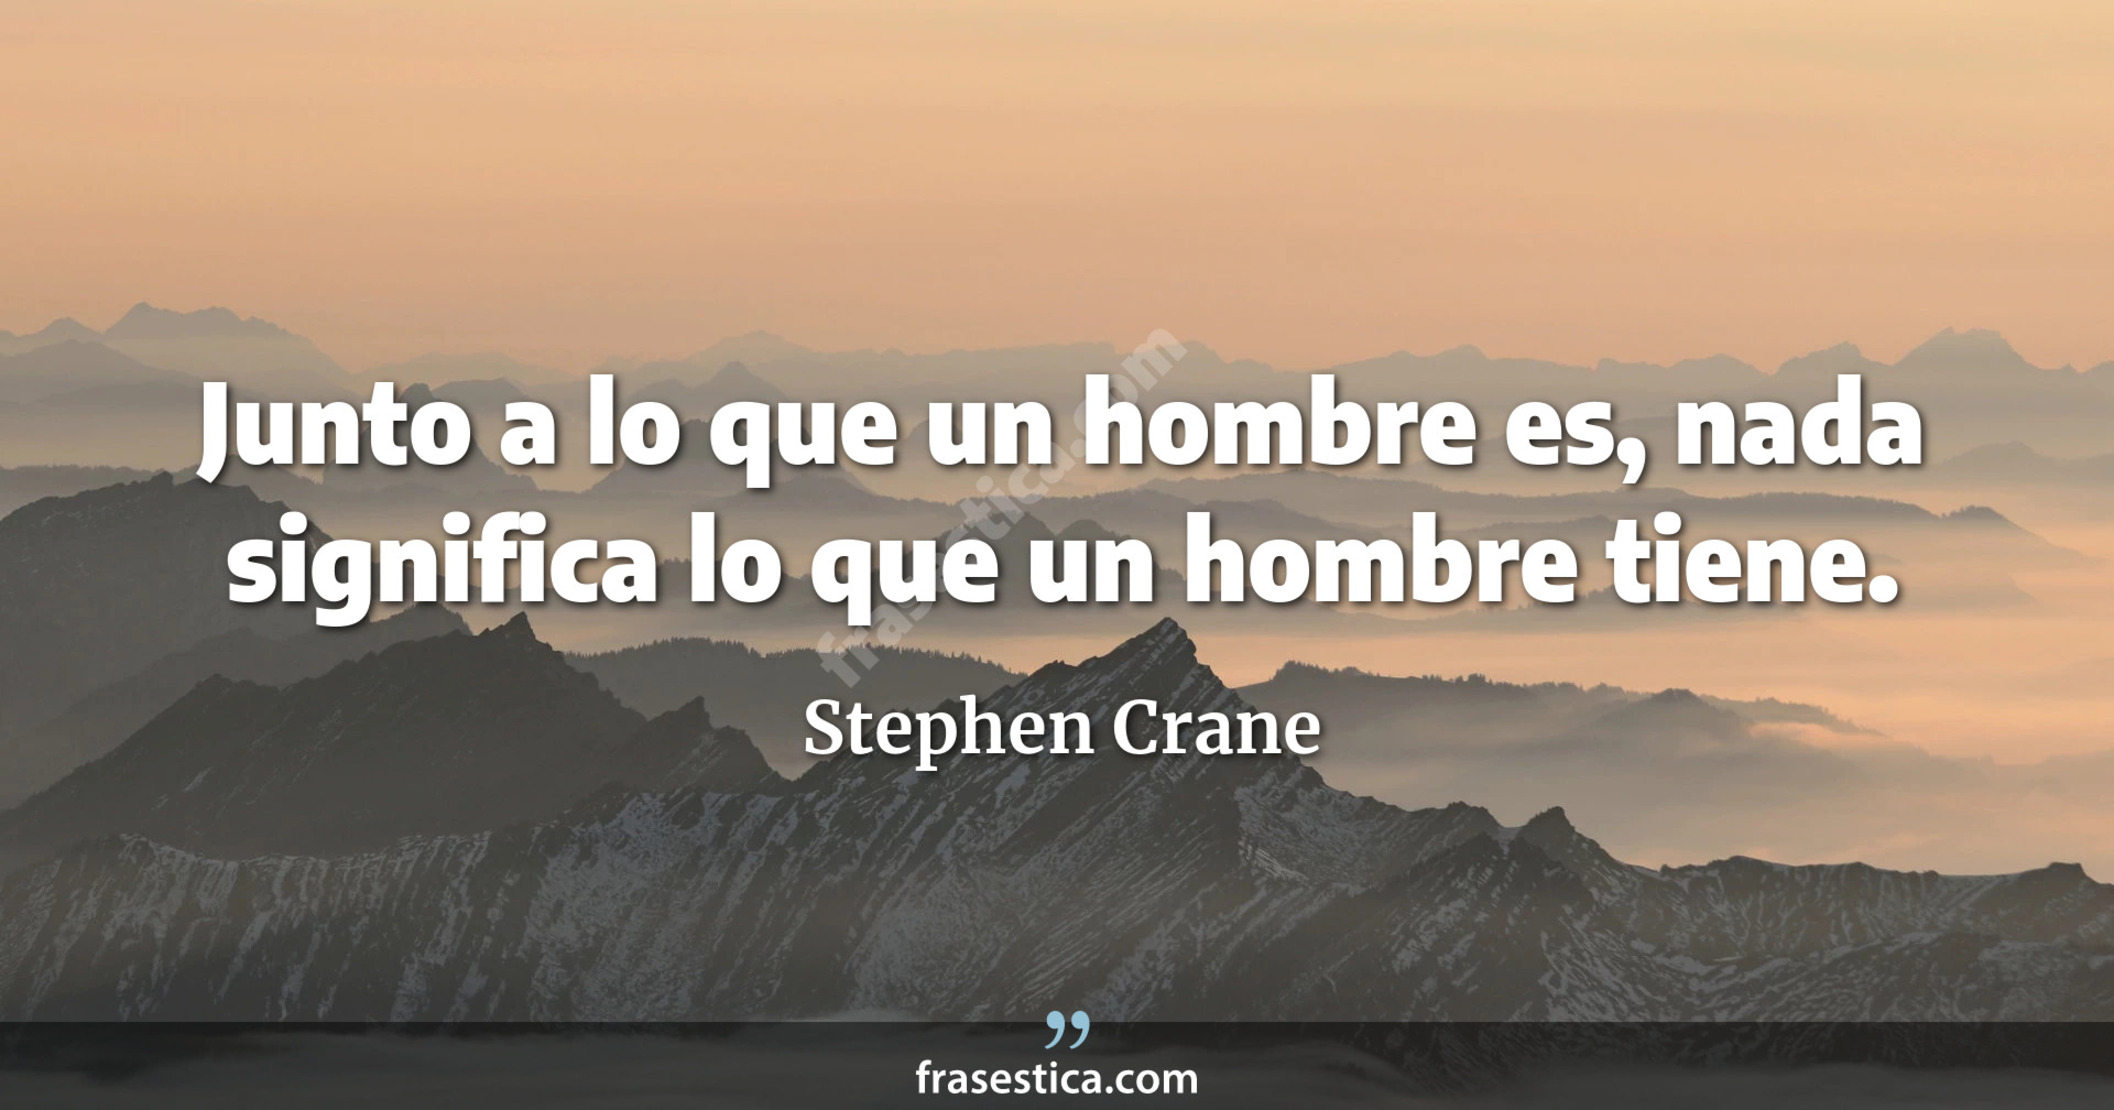 Junto a lo que un hombre es, nada significa lo que un hombre tiene. - Stephen Crane